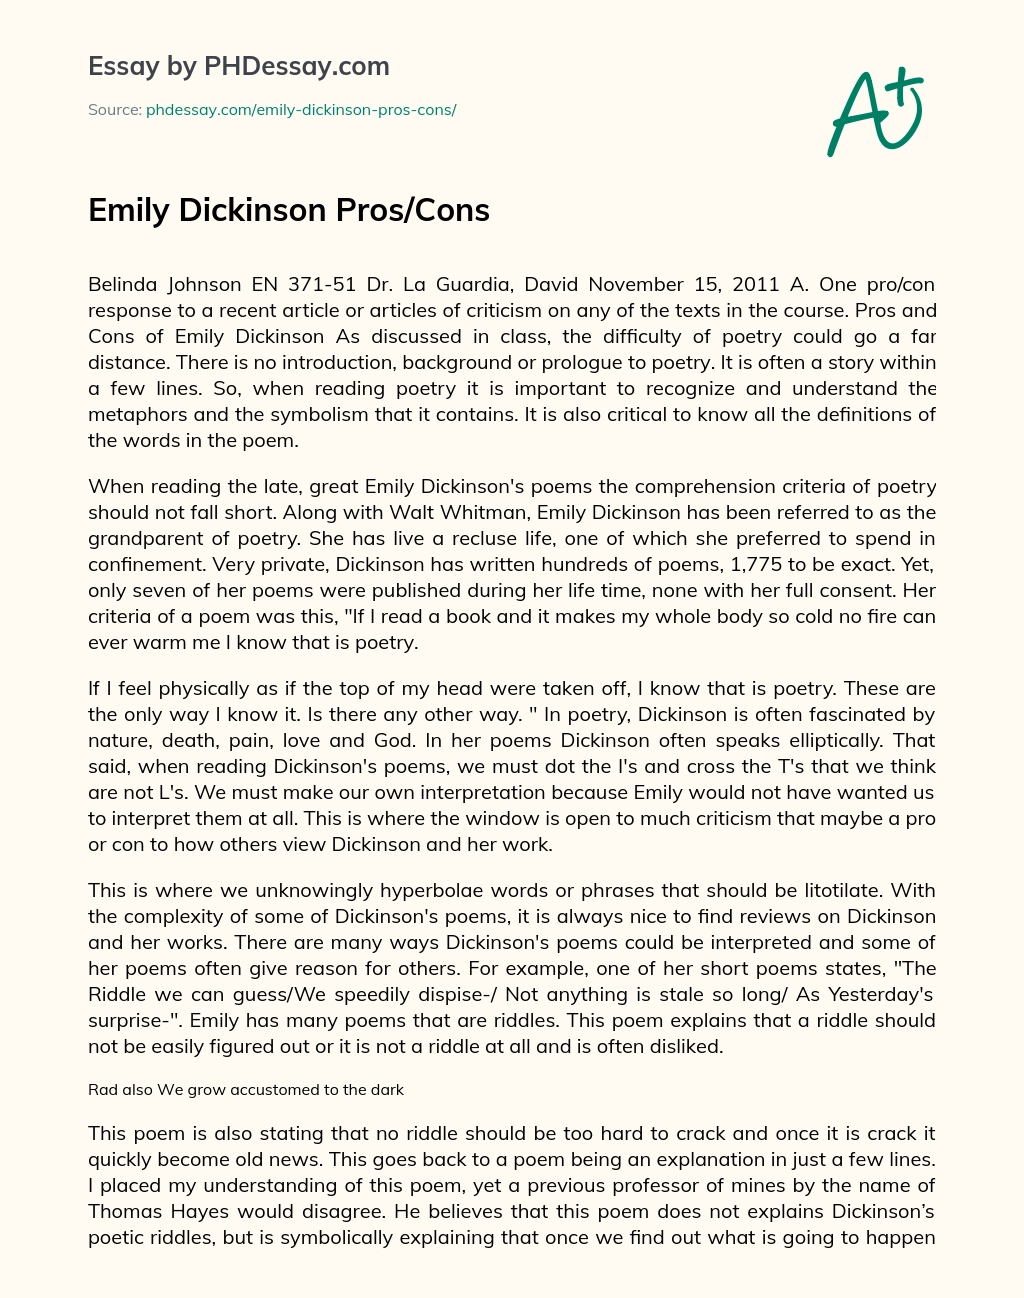 Emily Dickinson Pros/Cons essay